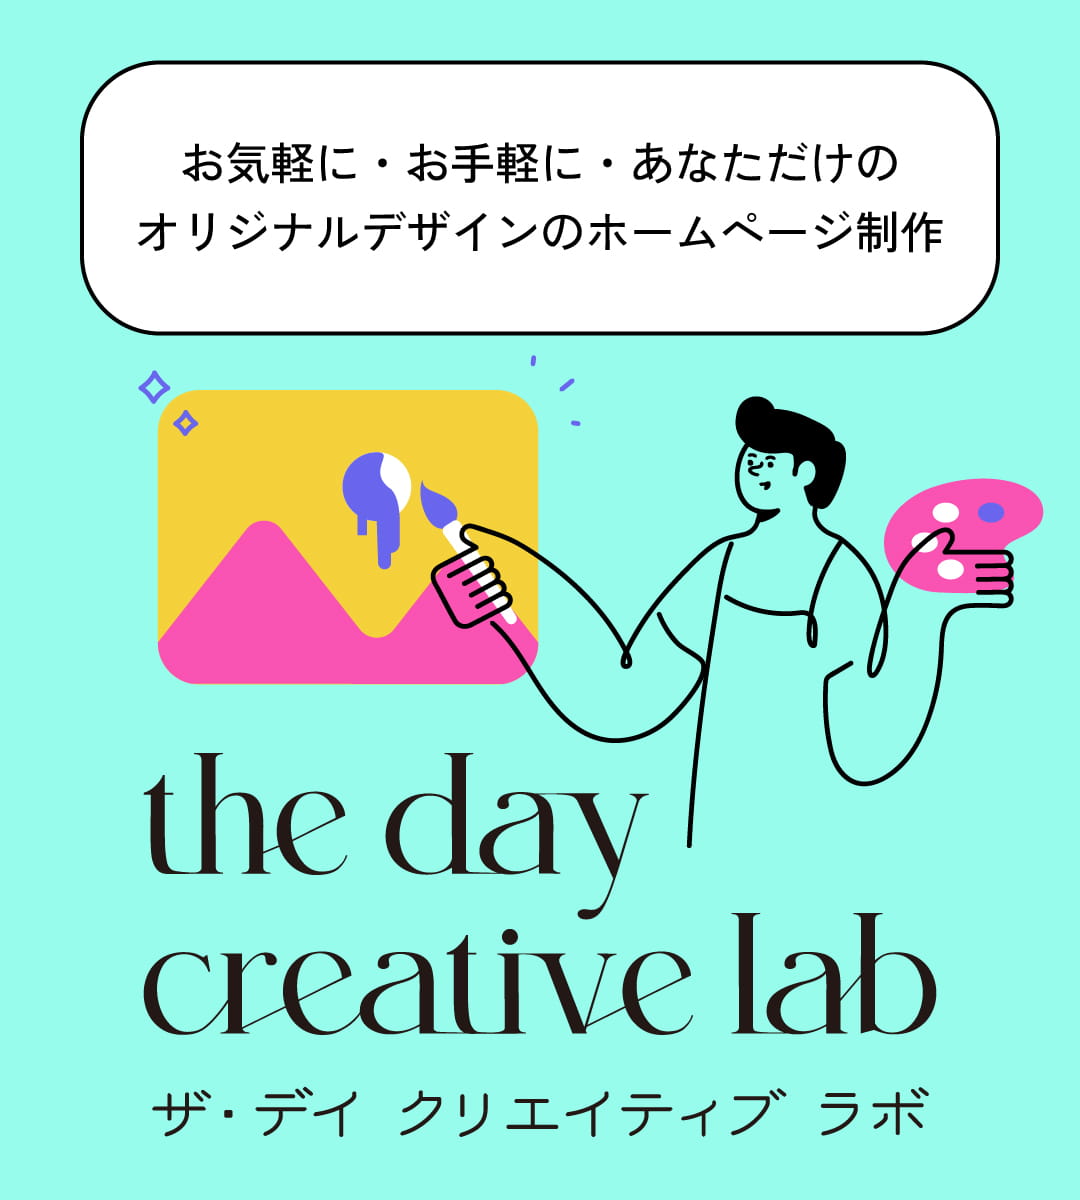 the day creative lab ザ・デイ クリエイティブラボ